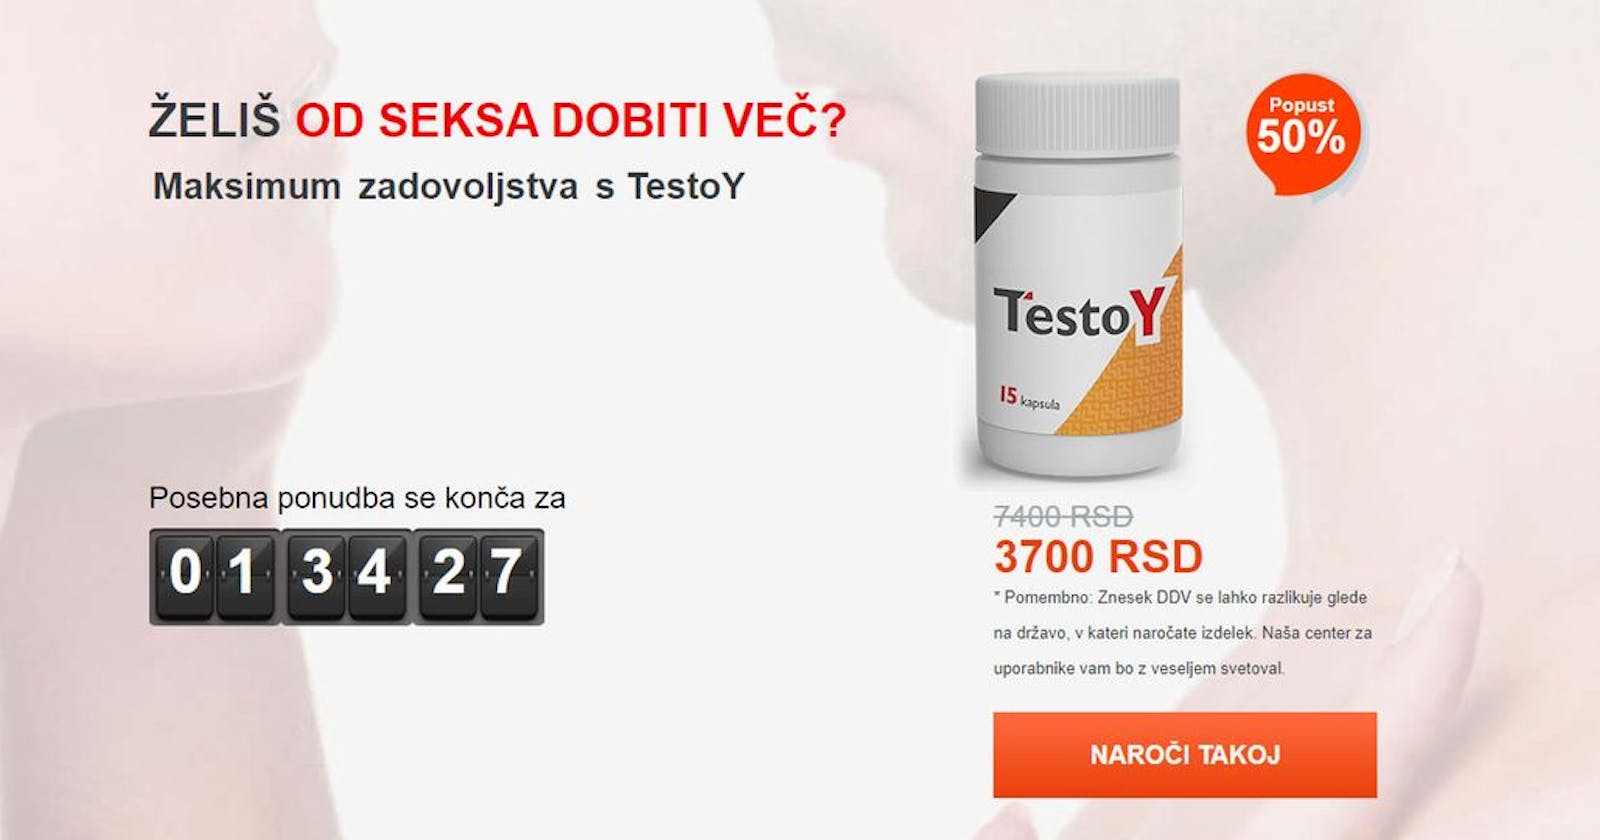 Теstoy - Капсуле, мишљења, цена - Купујте у Србији?